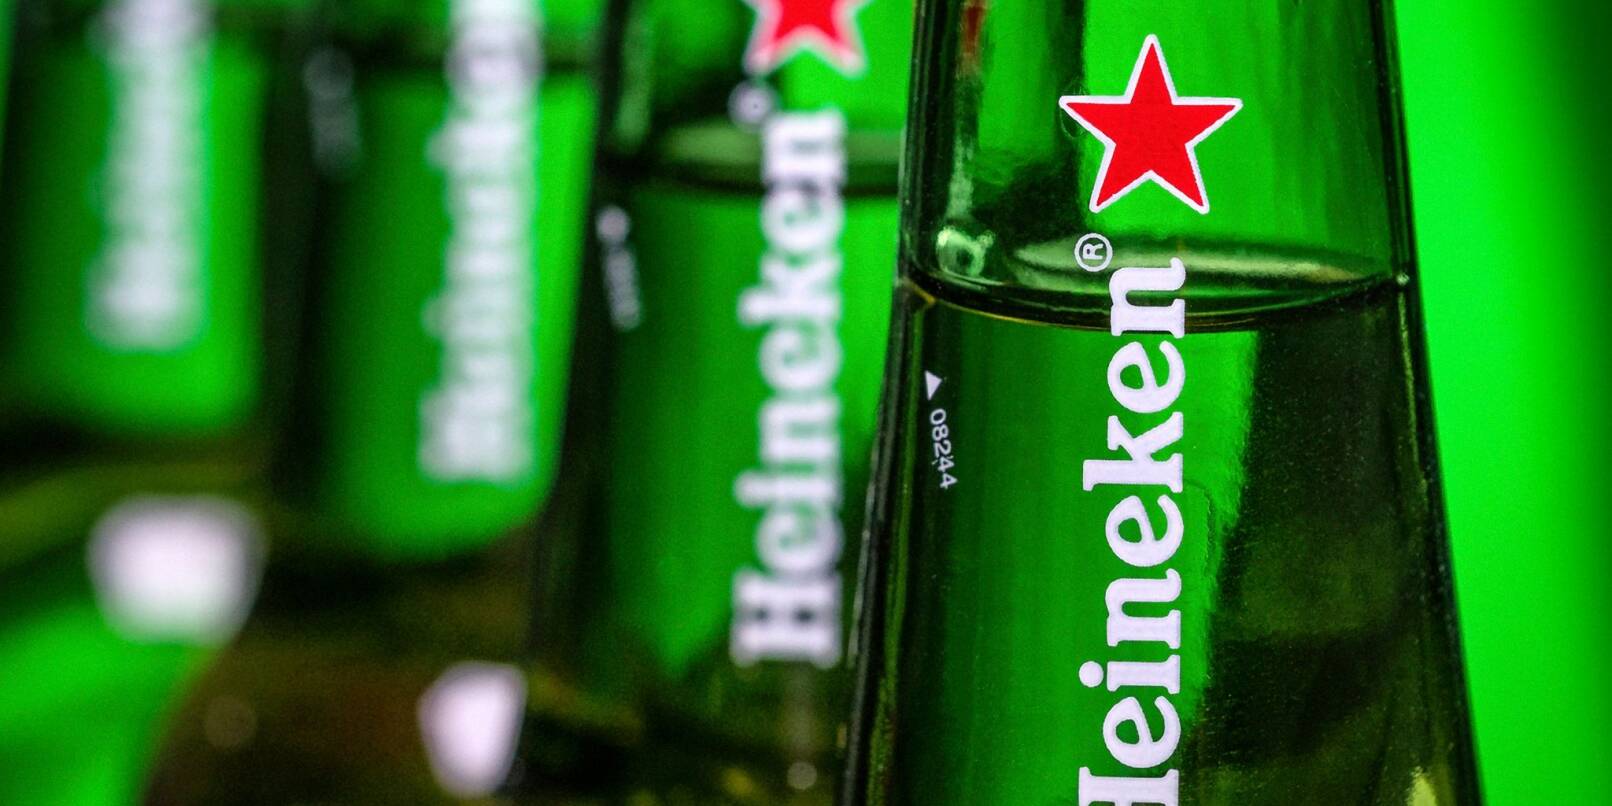 Der Braukonzern Heineken zieht sich aus Russland zurück.